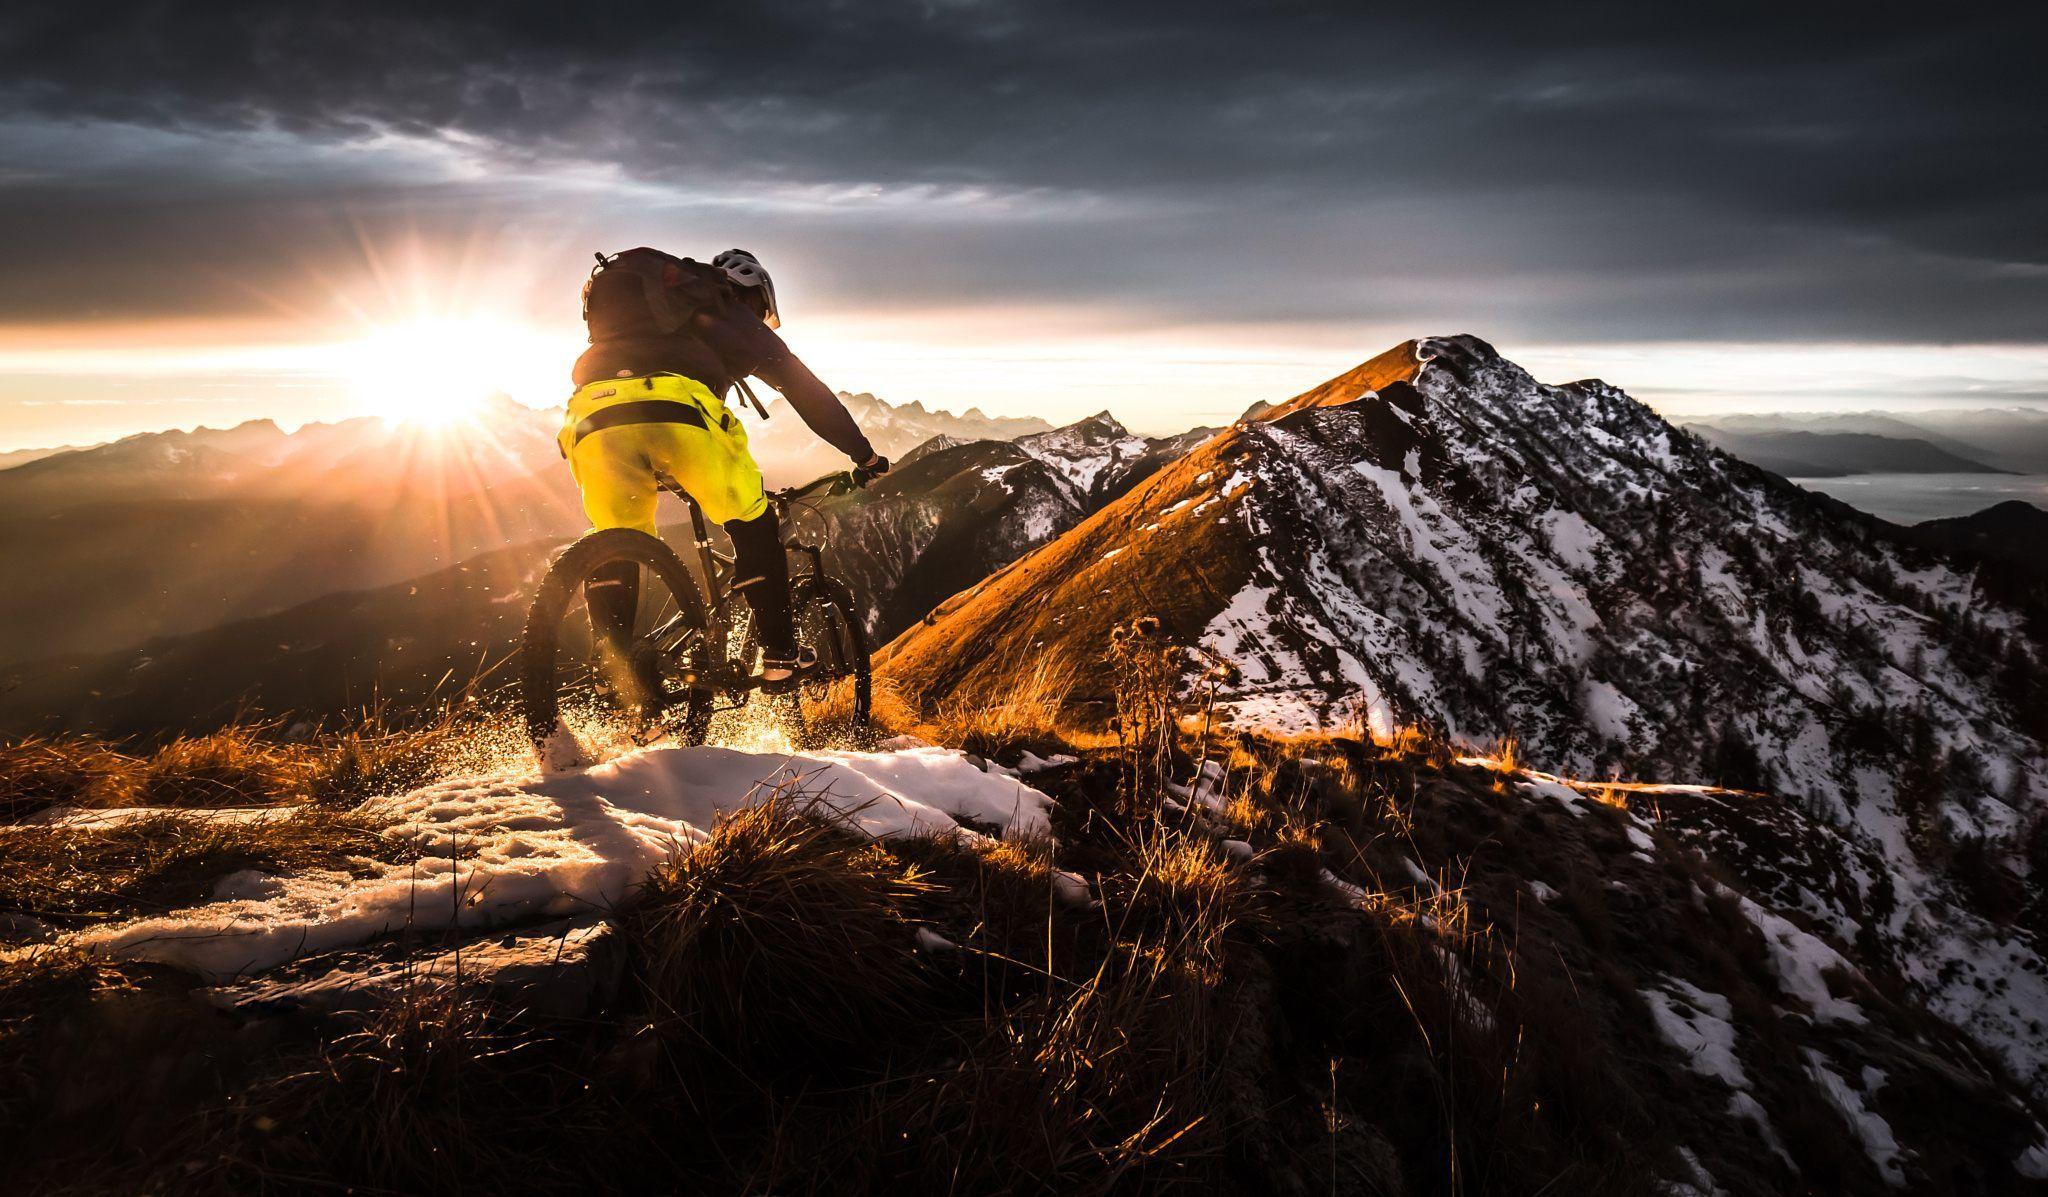 Mountain Bike Wallpaper Images - Free Download on Freepik